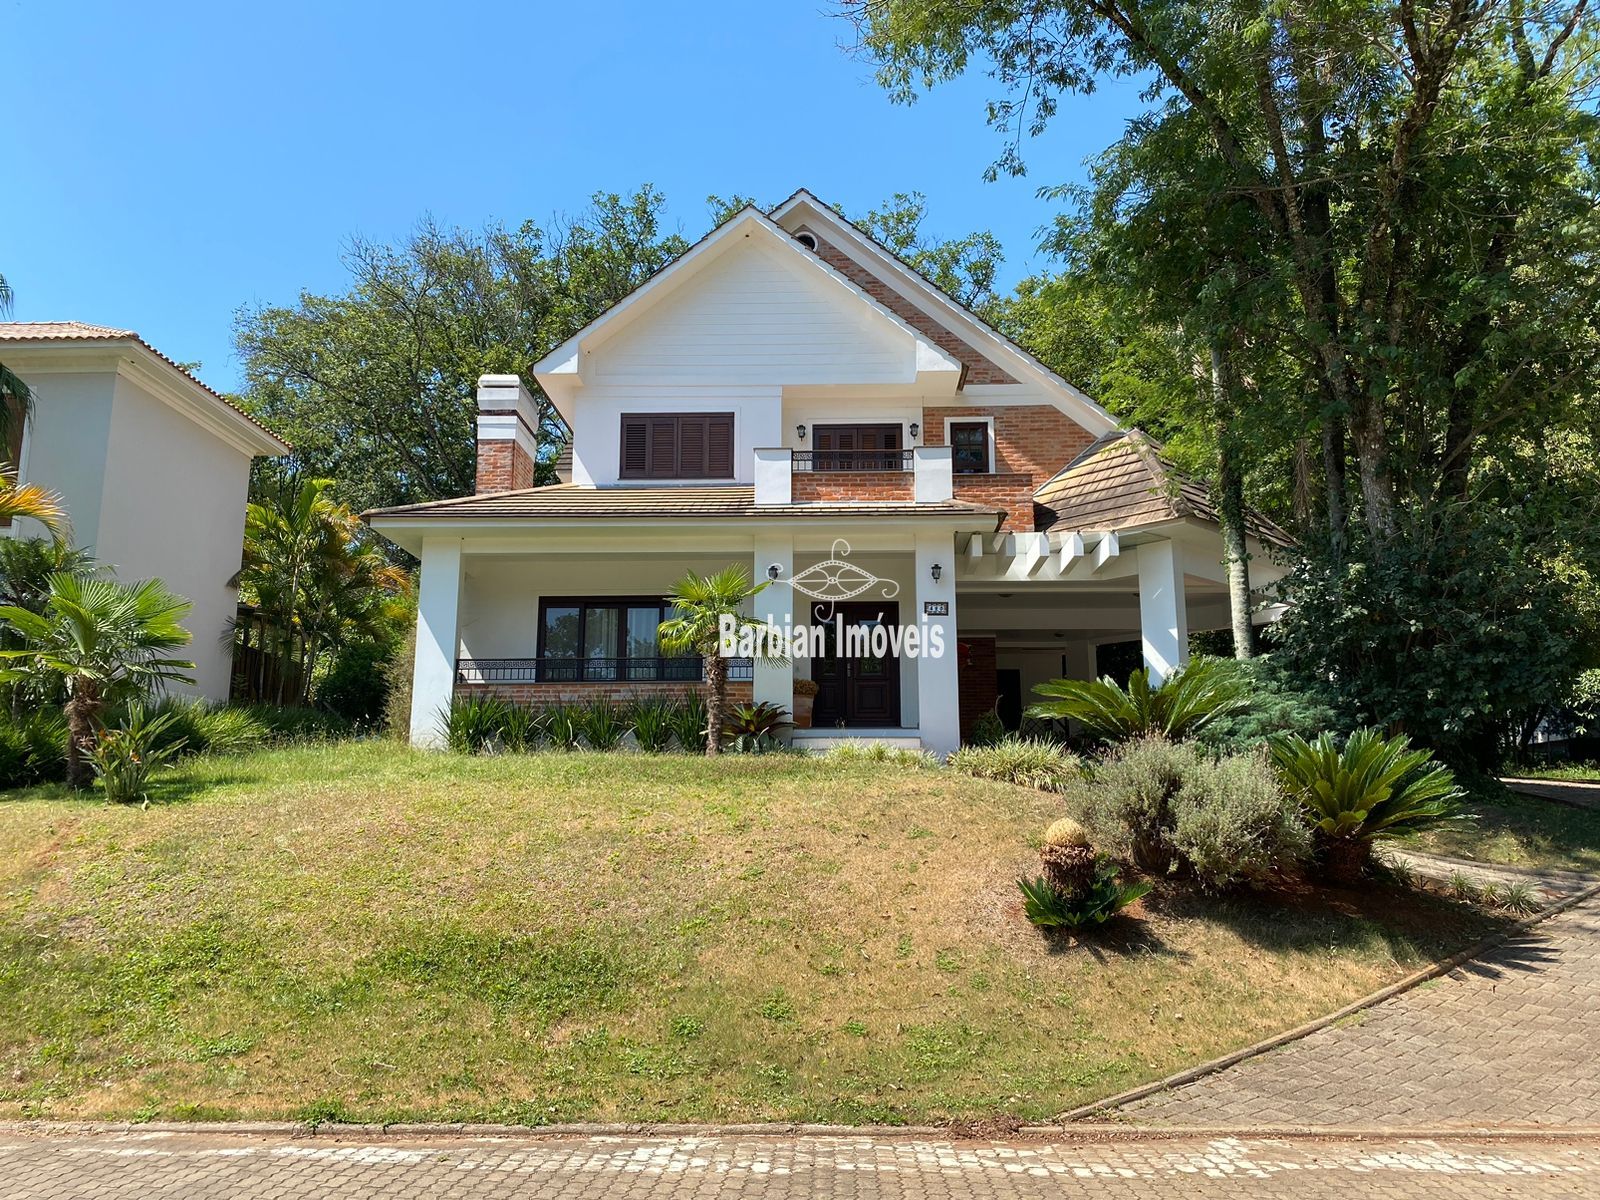 Casa  venda  no Jardim Europa - Santa Cruz do Sul, RS. Imveis